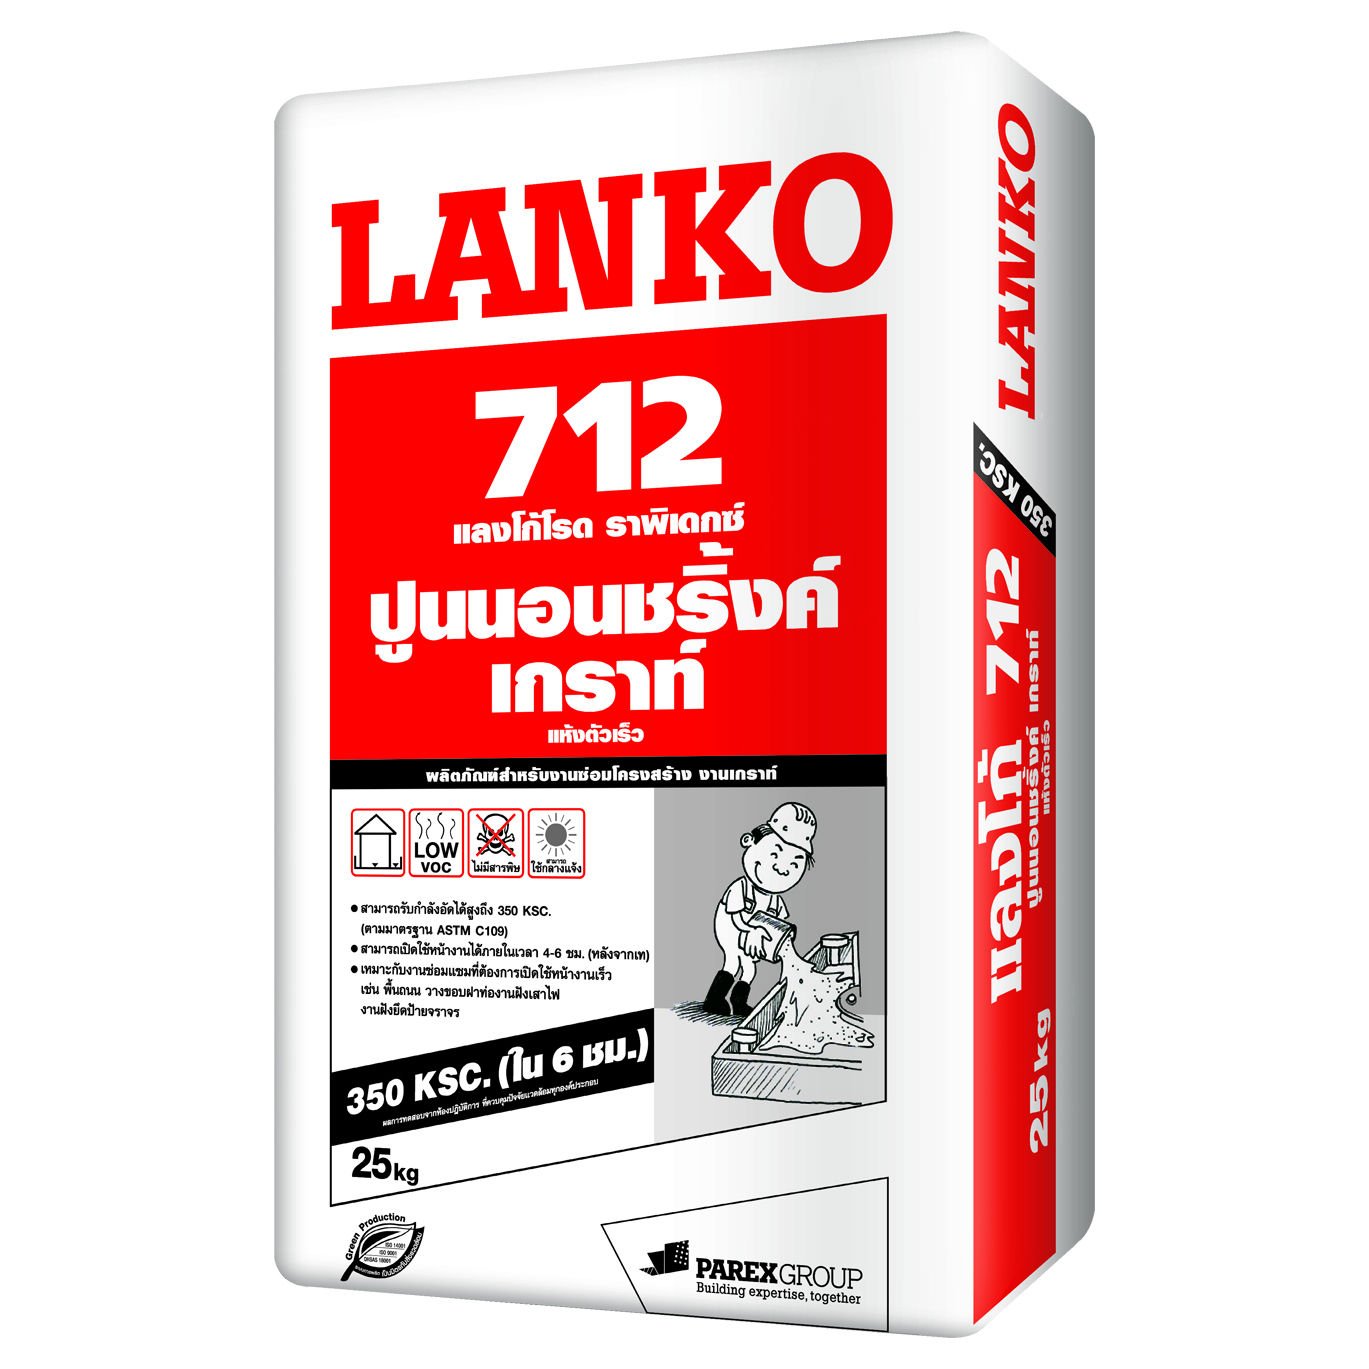 Lanko 712, 25 kg/set